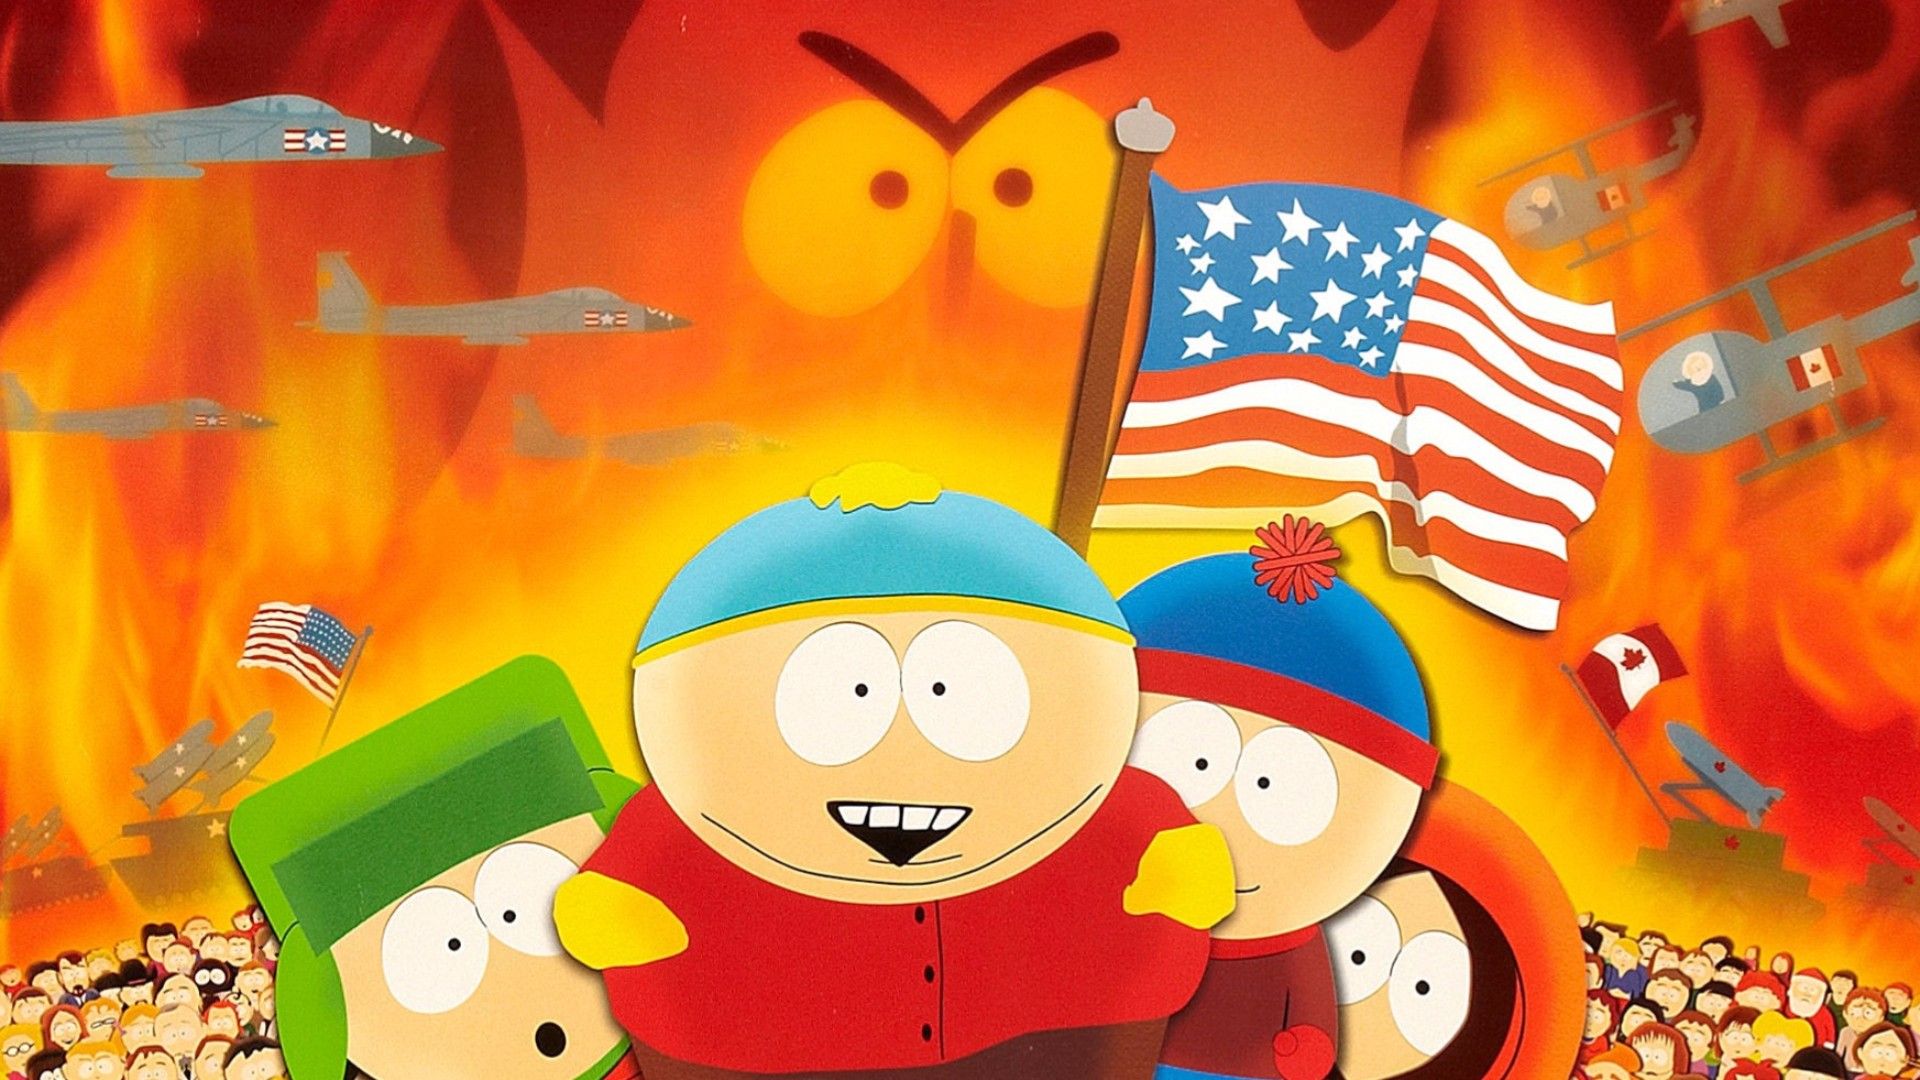 South Park: Bigger, Longer & Uncut background